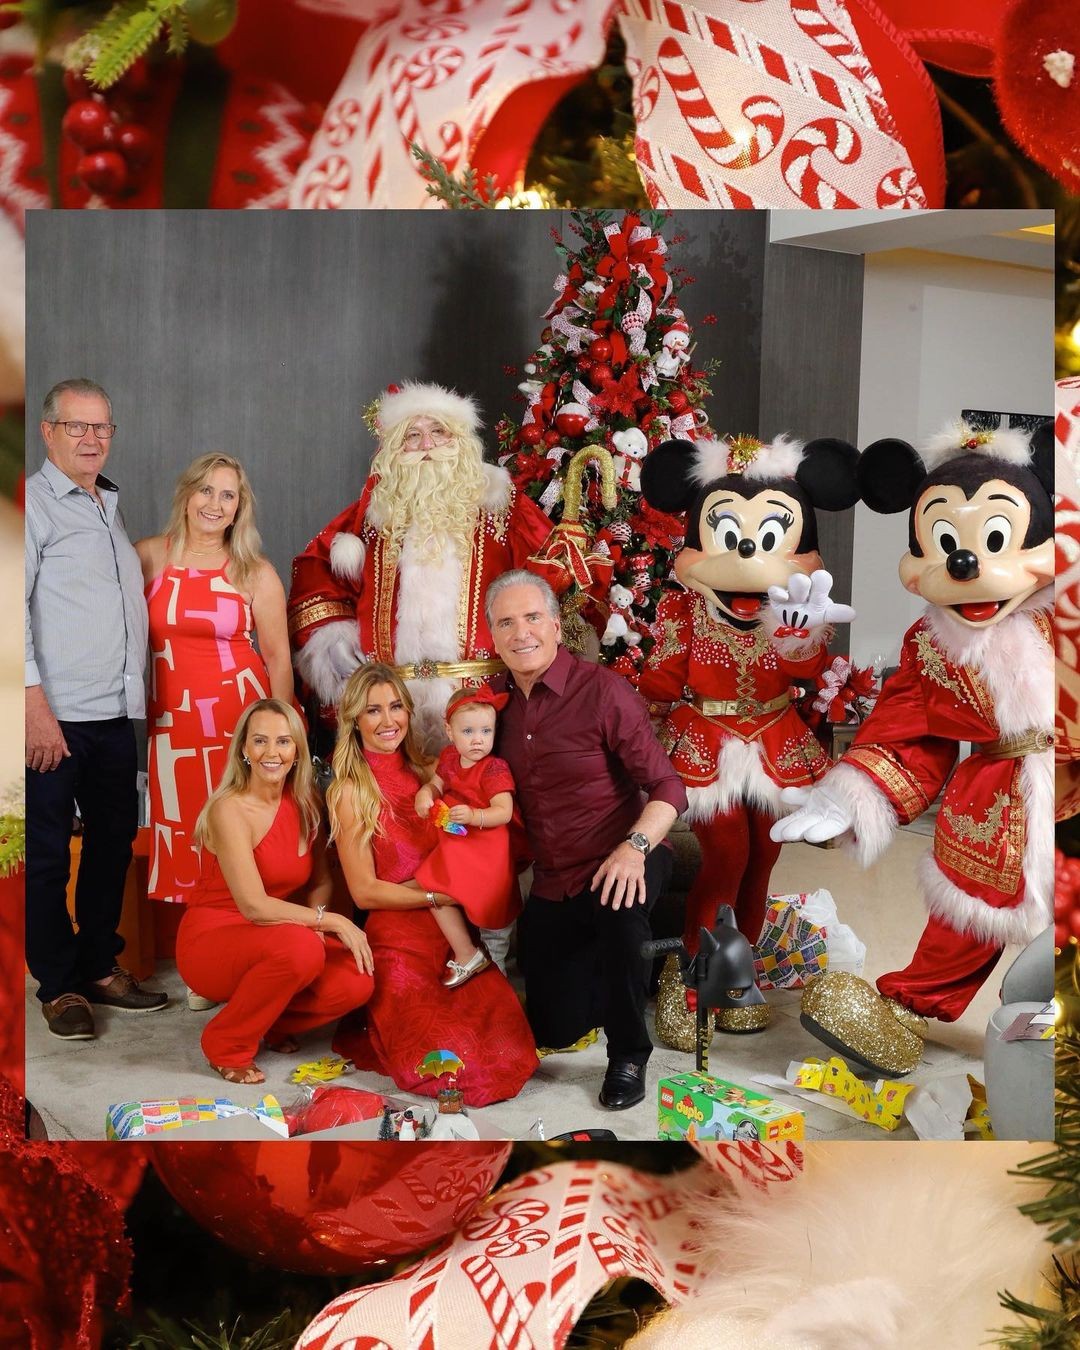 Ana Paula Siebert posa com a família em álbum natalino (Foto: Reprodução / Instagram)